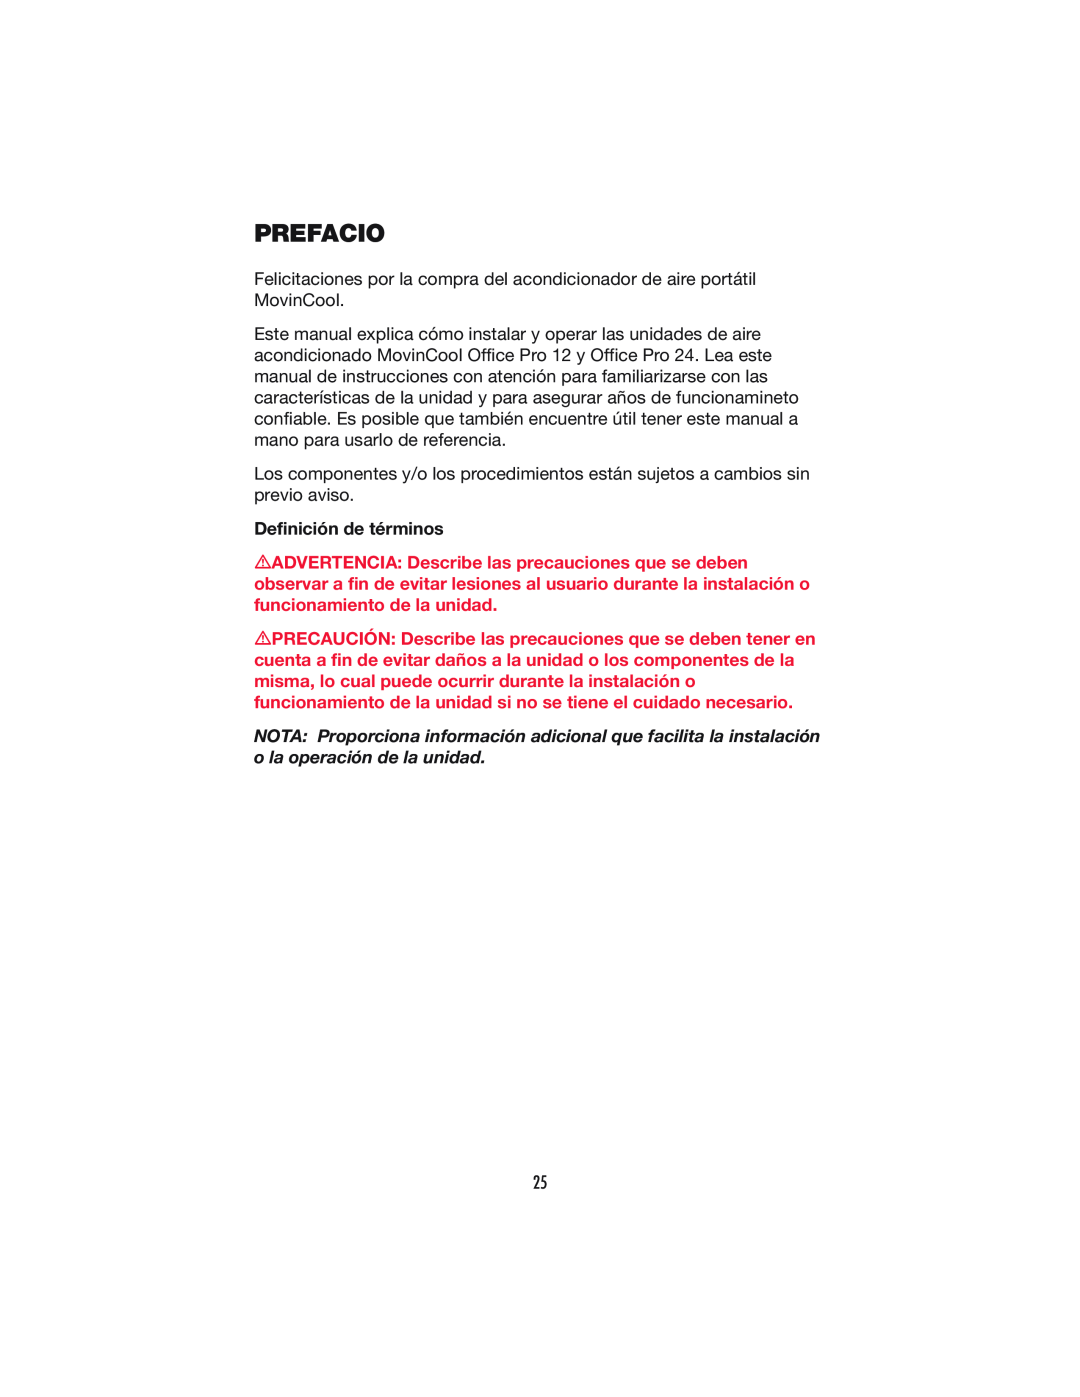 Denso OFFICE PRO 24, OFFICE PRO 12 operation manual Prefacio, Definición de términos 